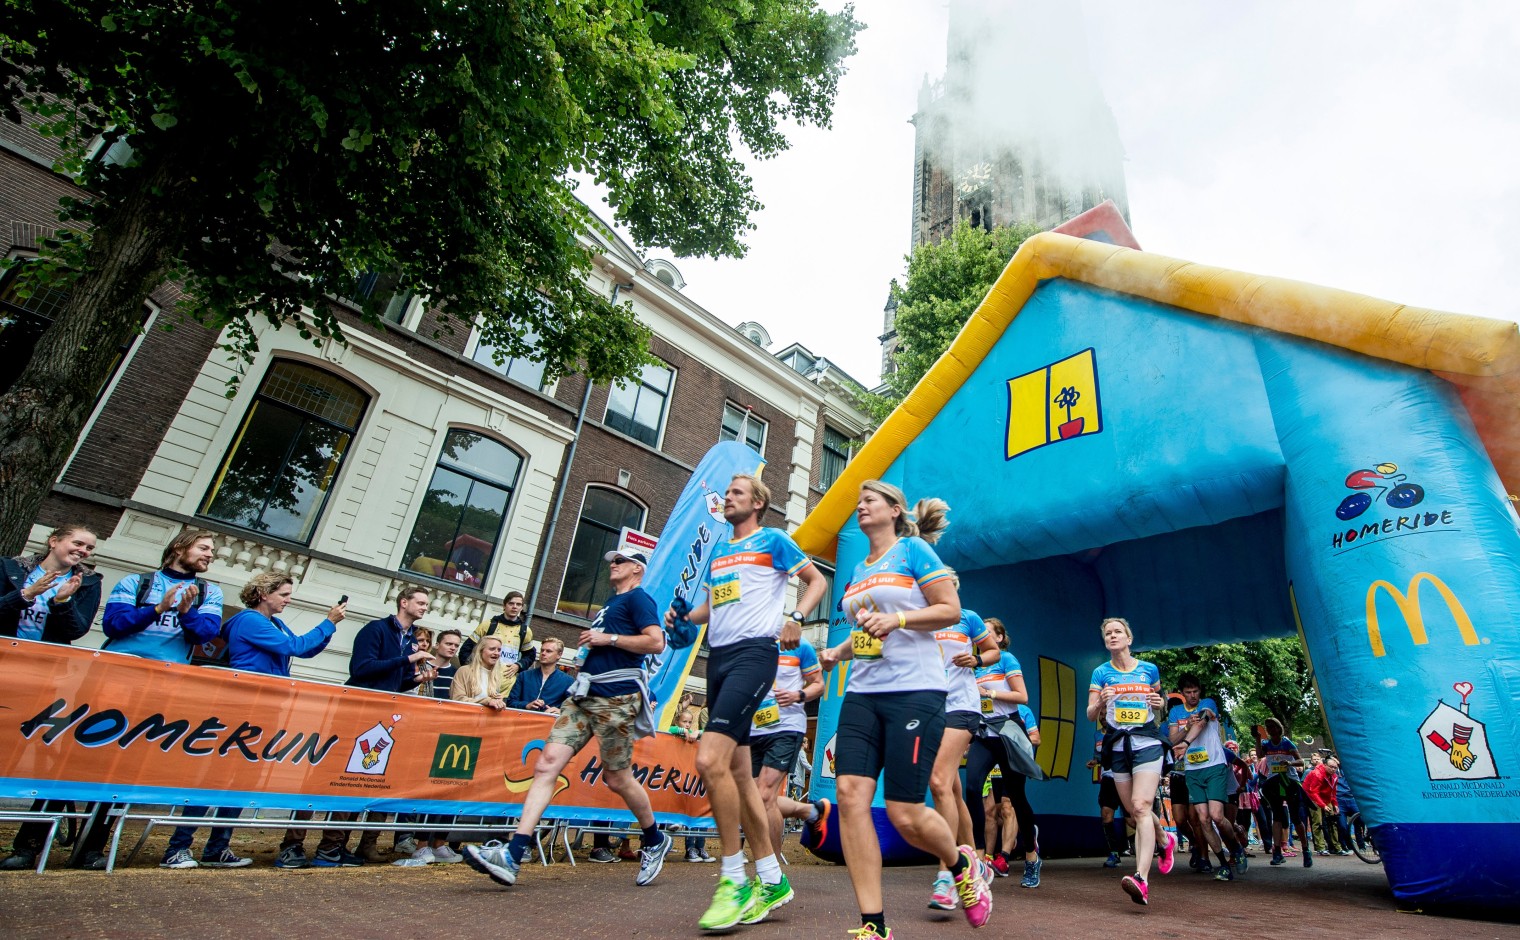 De HomeRun, een 24 uur durende sponsorloop voor het Ronald McDonald Kinderfonds, die dit weekend zijn primeur beleefde in Utrecht